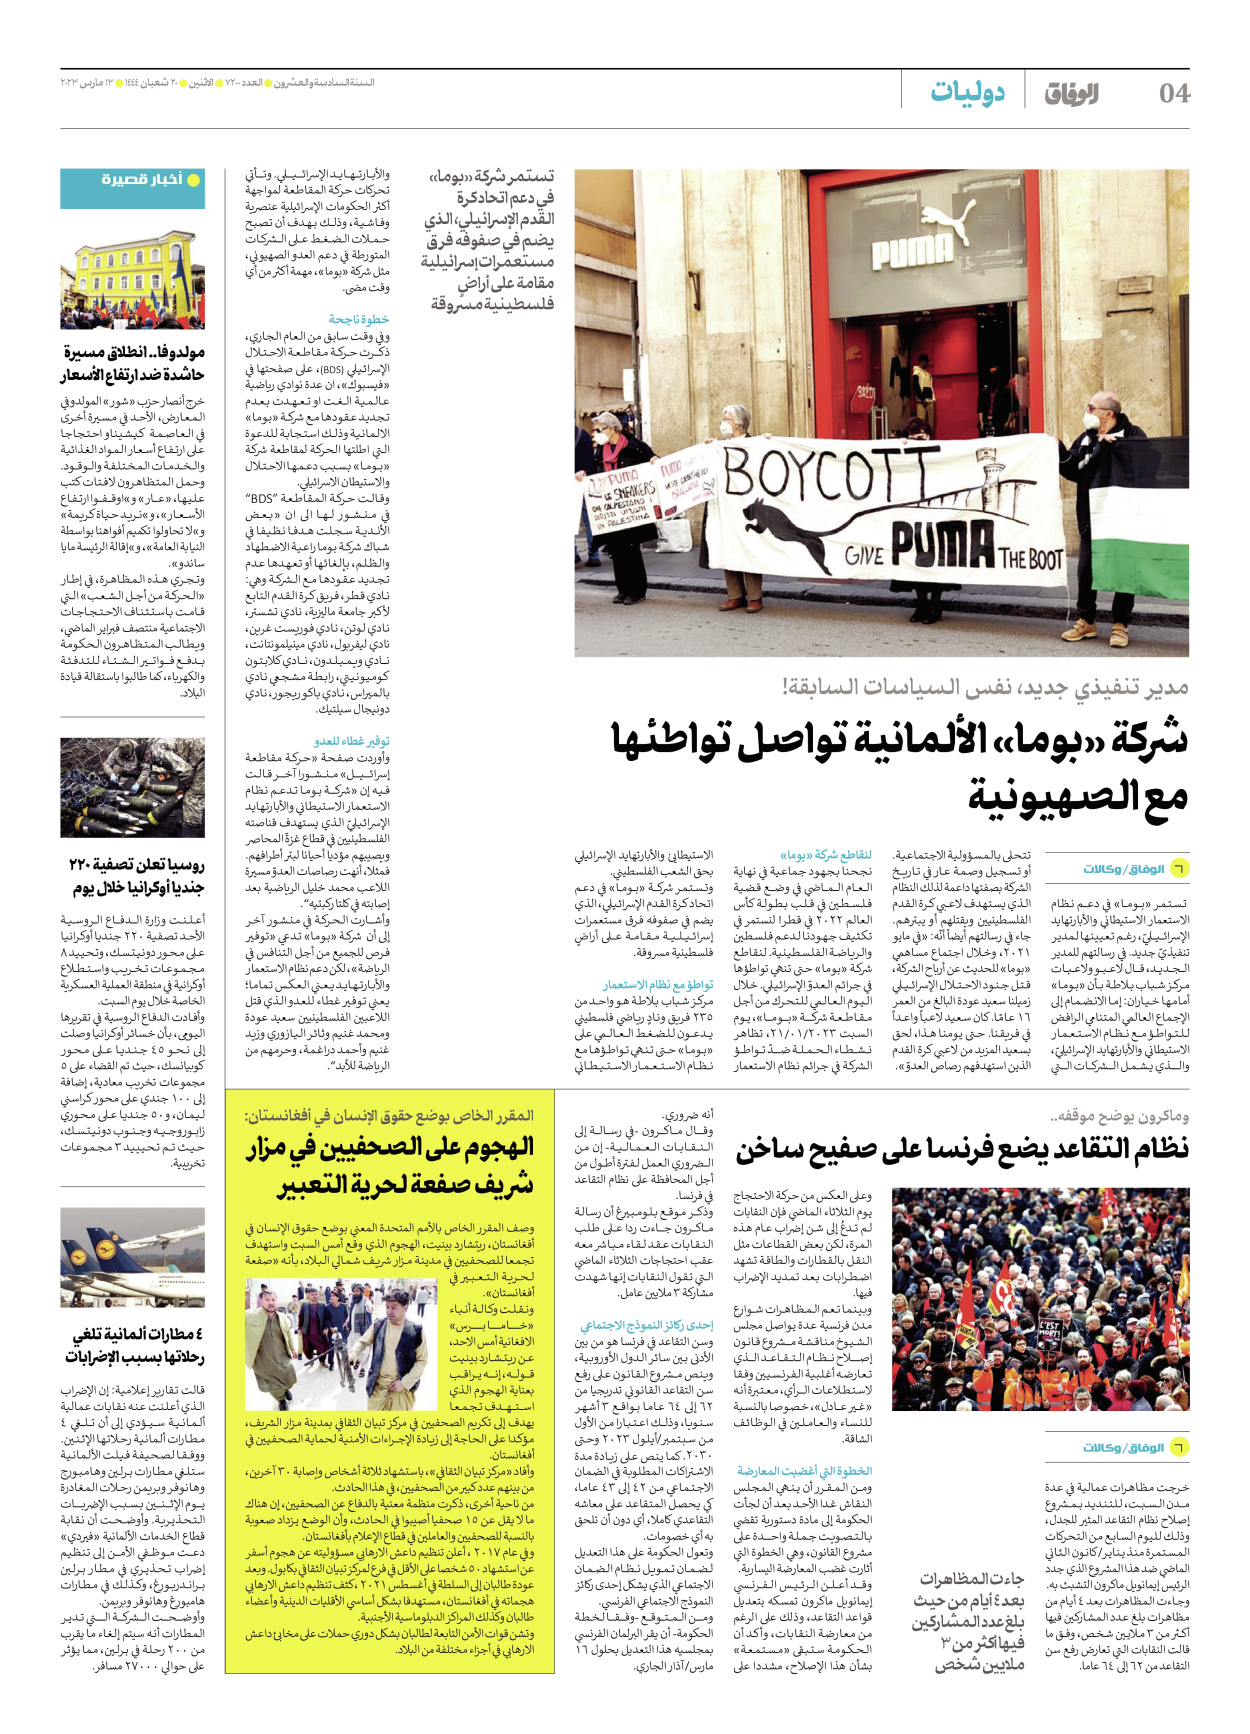 صحیفة ایران الدولیة الوفاق - العدد سبعة آلاف ومائتان - ١٣ مارس ٢٠٢٣ - الصفحة ٤